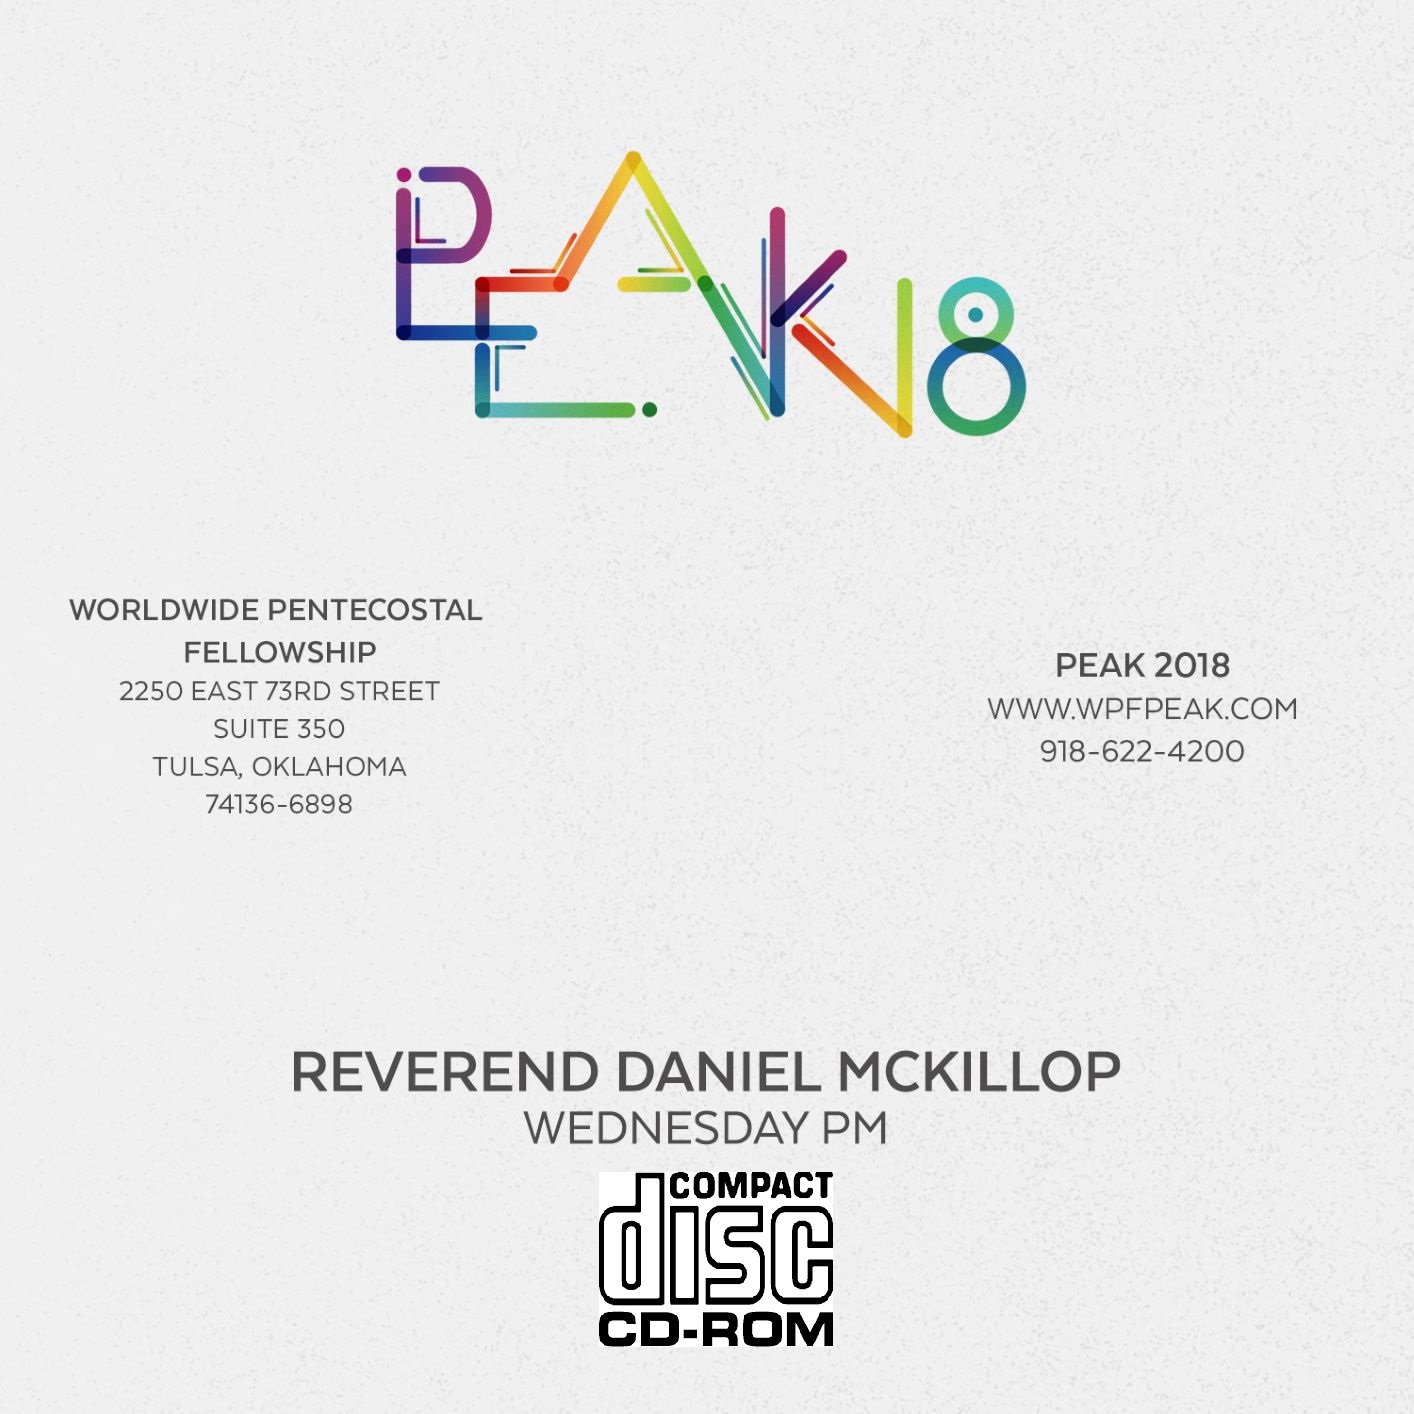 2018 PEAK Rev. Daniel McKillop (CD)